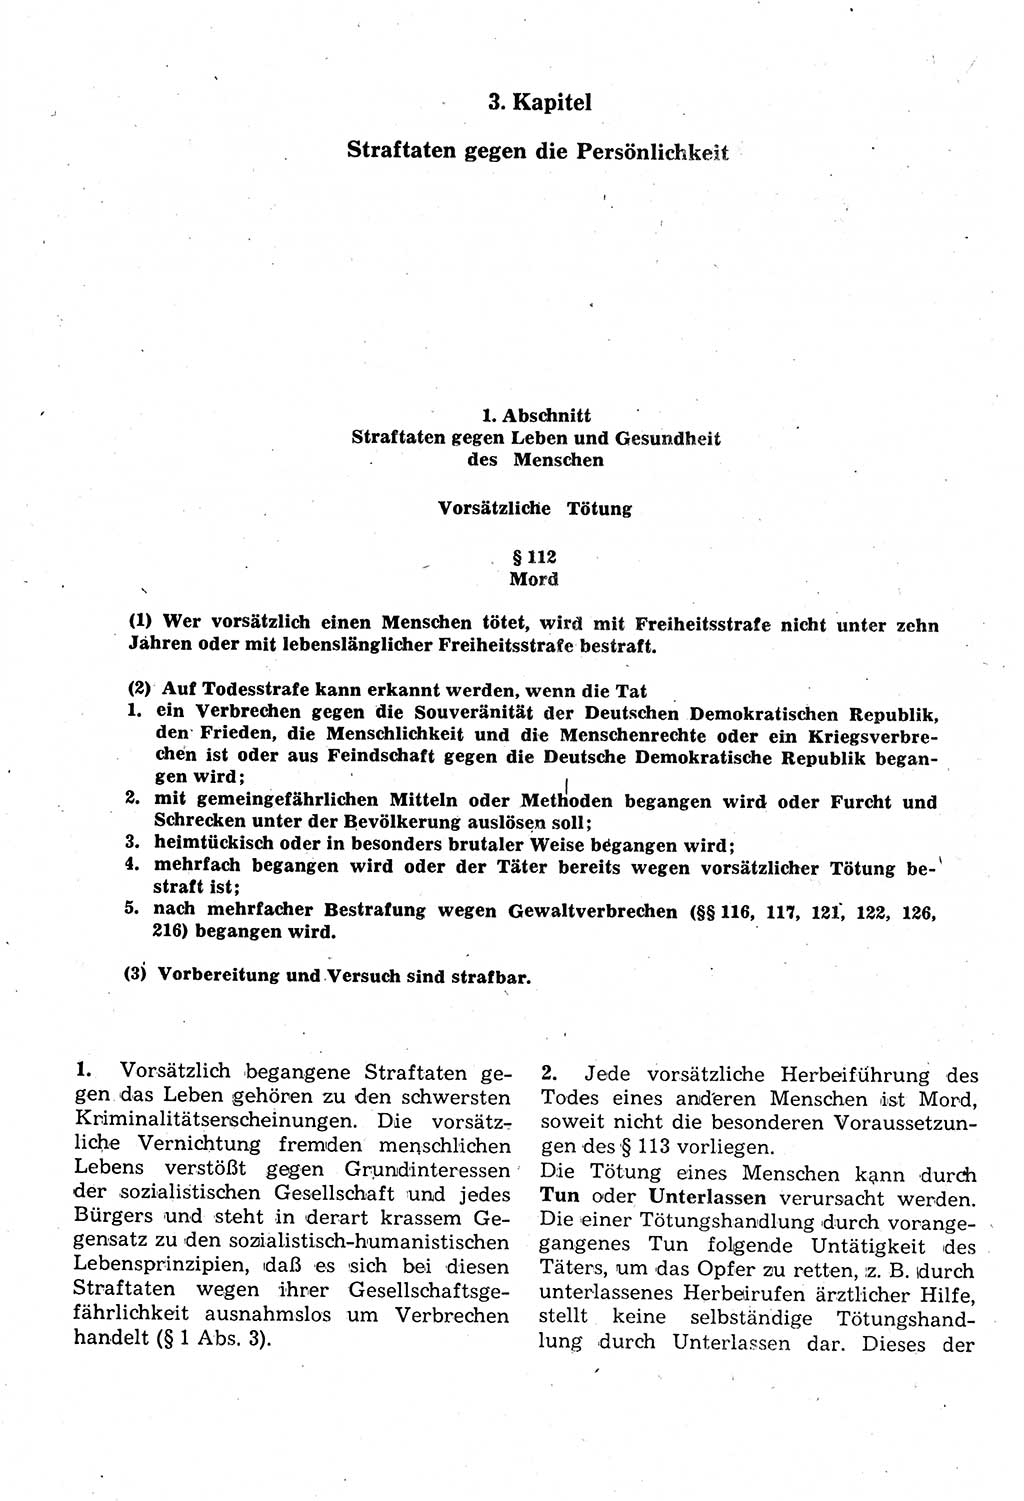 Strafrecht der Deutschen Demokratischen Republik (DDR), Kommentar zum Strafgesetzbuch (StGB) 1987, Seite 290 (Strafr. DDR Komm. StGB 1987, S. 290)